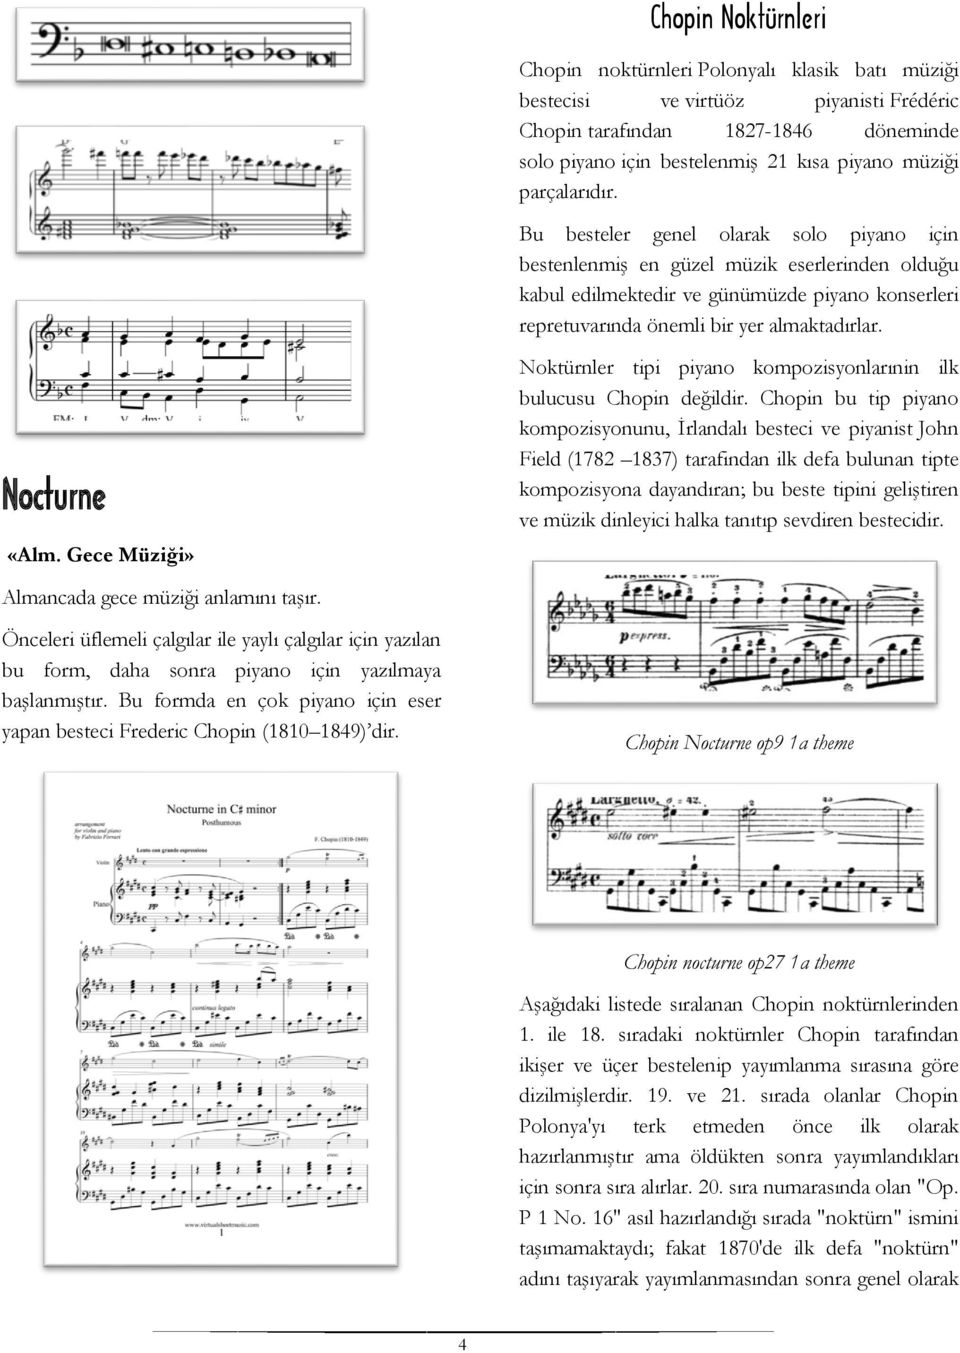 Nocturne «Alm. Gece Müziği» Noktürnler tipi piyano kompozisyonlarınin ilk bulucusu Chopin değildir.